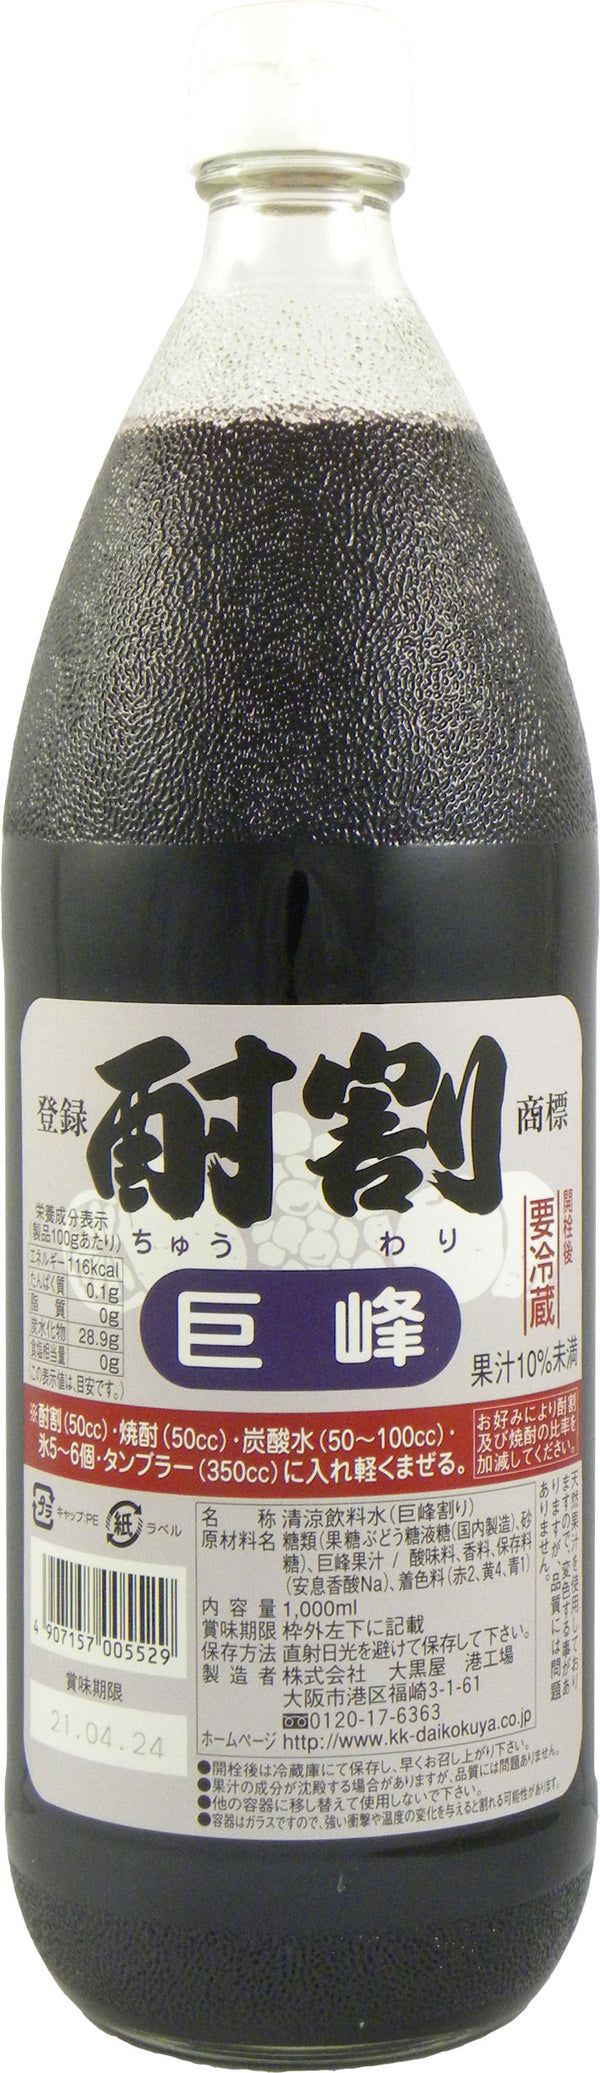 Daikokuya Chuwari Kyoho 1L Bottle Syrup for Commercial Use